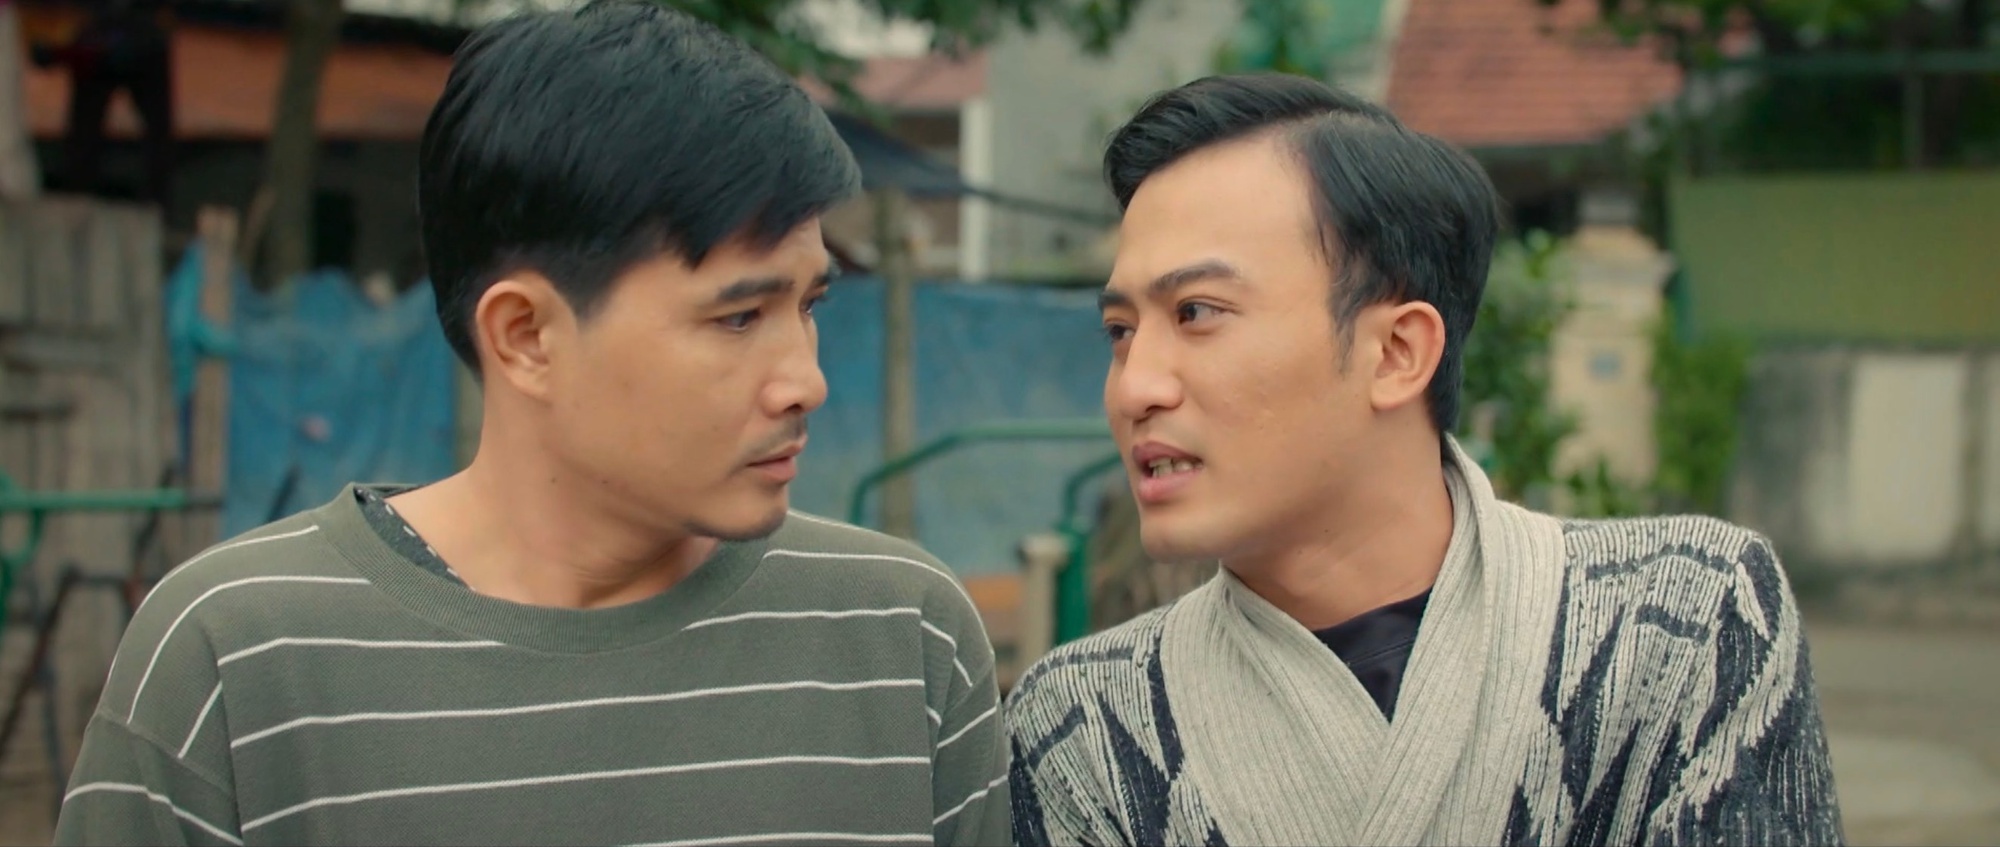 Bị cả nhà kết tội ngoại tình, nhân vật gây tranh cãi nhất phim Việt giờ vàng có cách hành xử ghi điểm với khán giả - Ảnh 6.